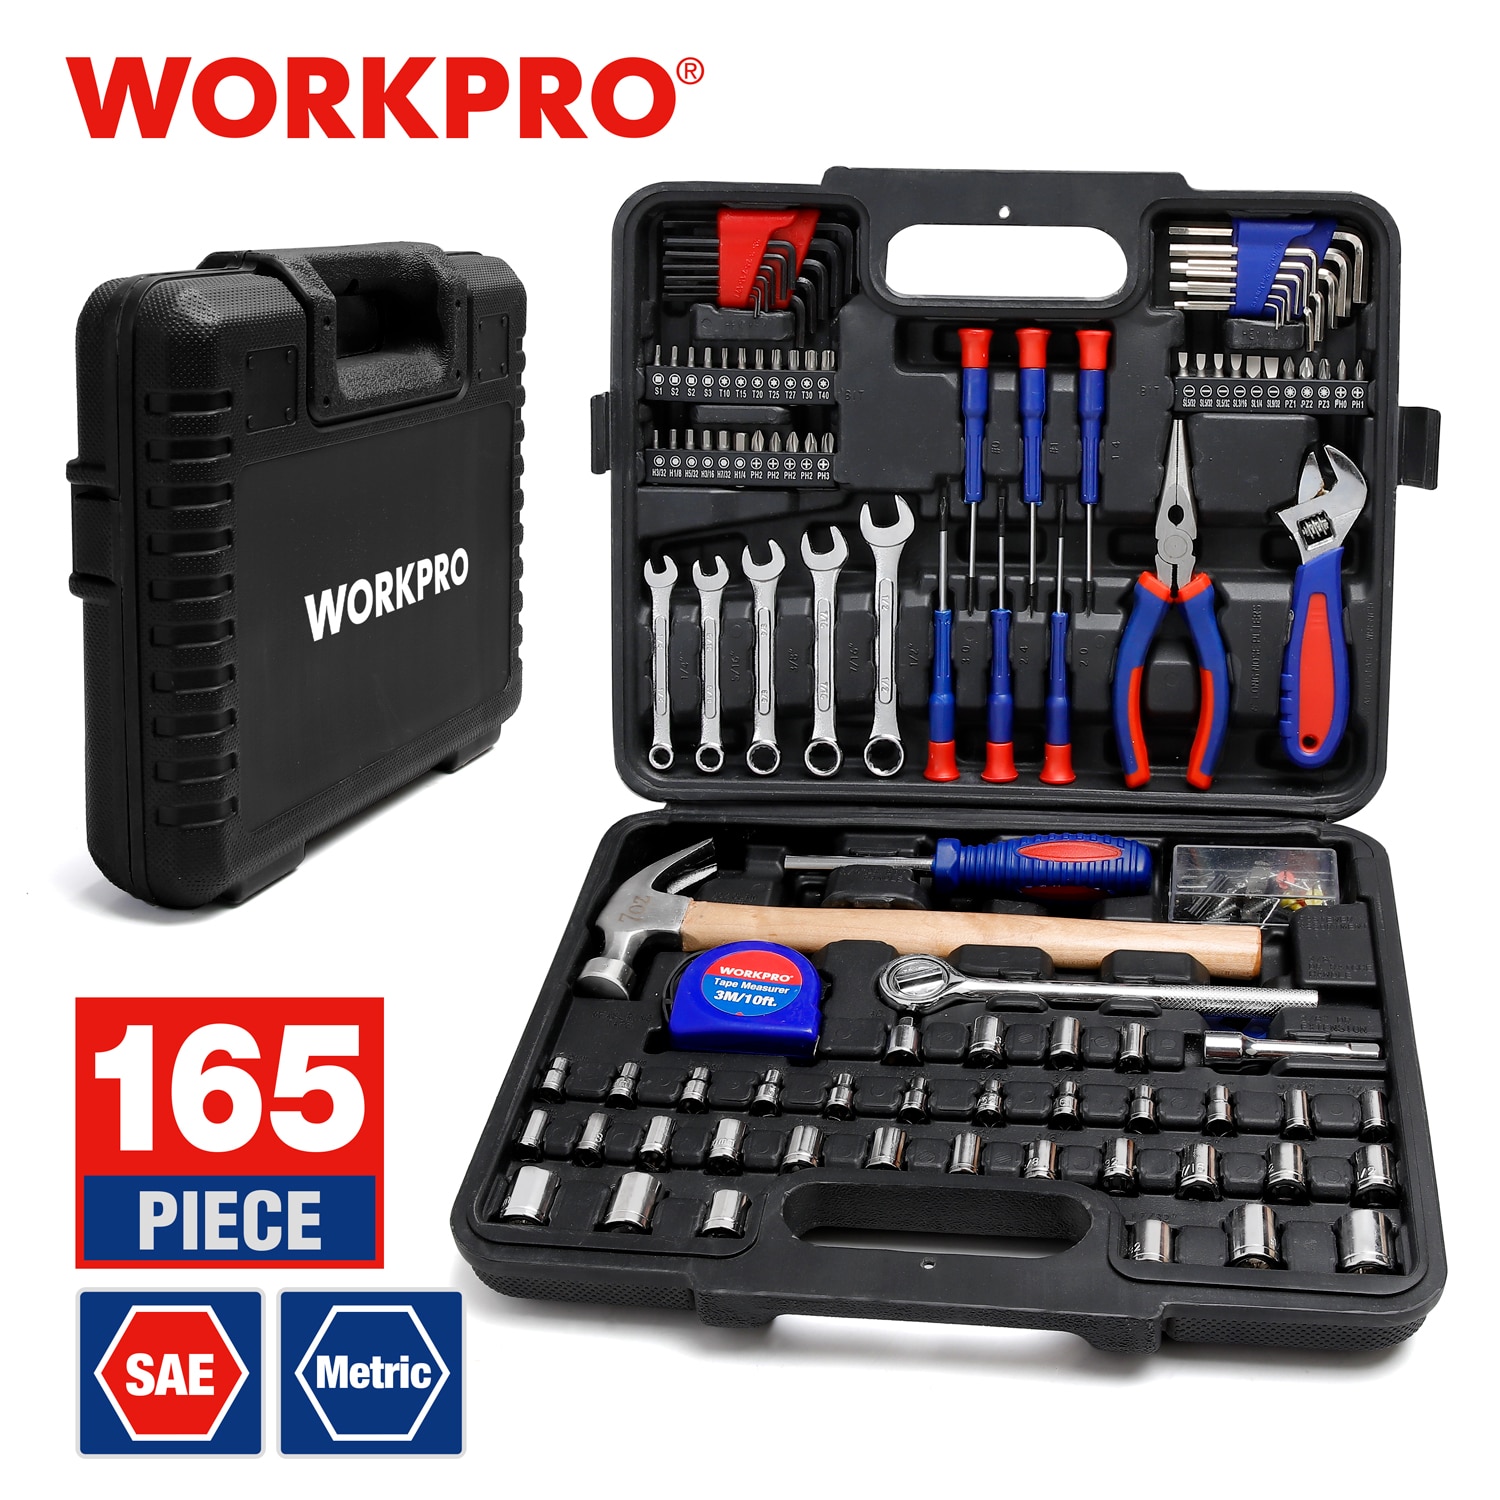 WORKPRO-Juego de herramientas para el hogar, juego de enchufes y destornilladores, herramientas manuales de bricolaje